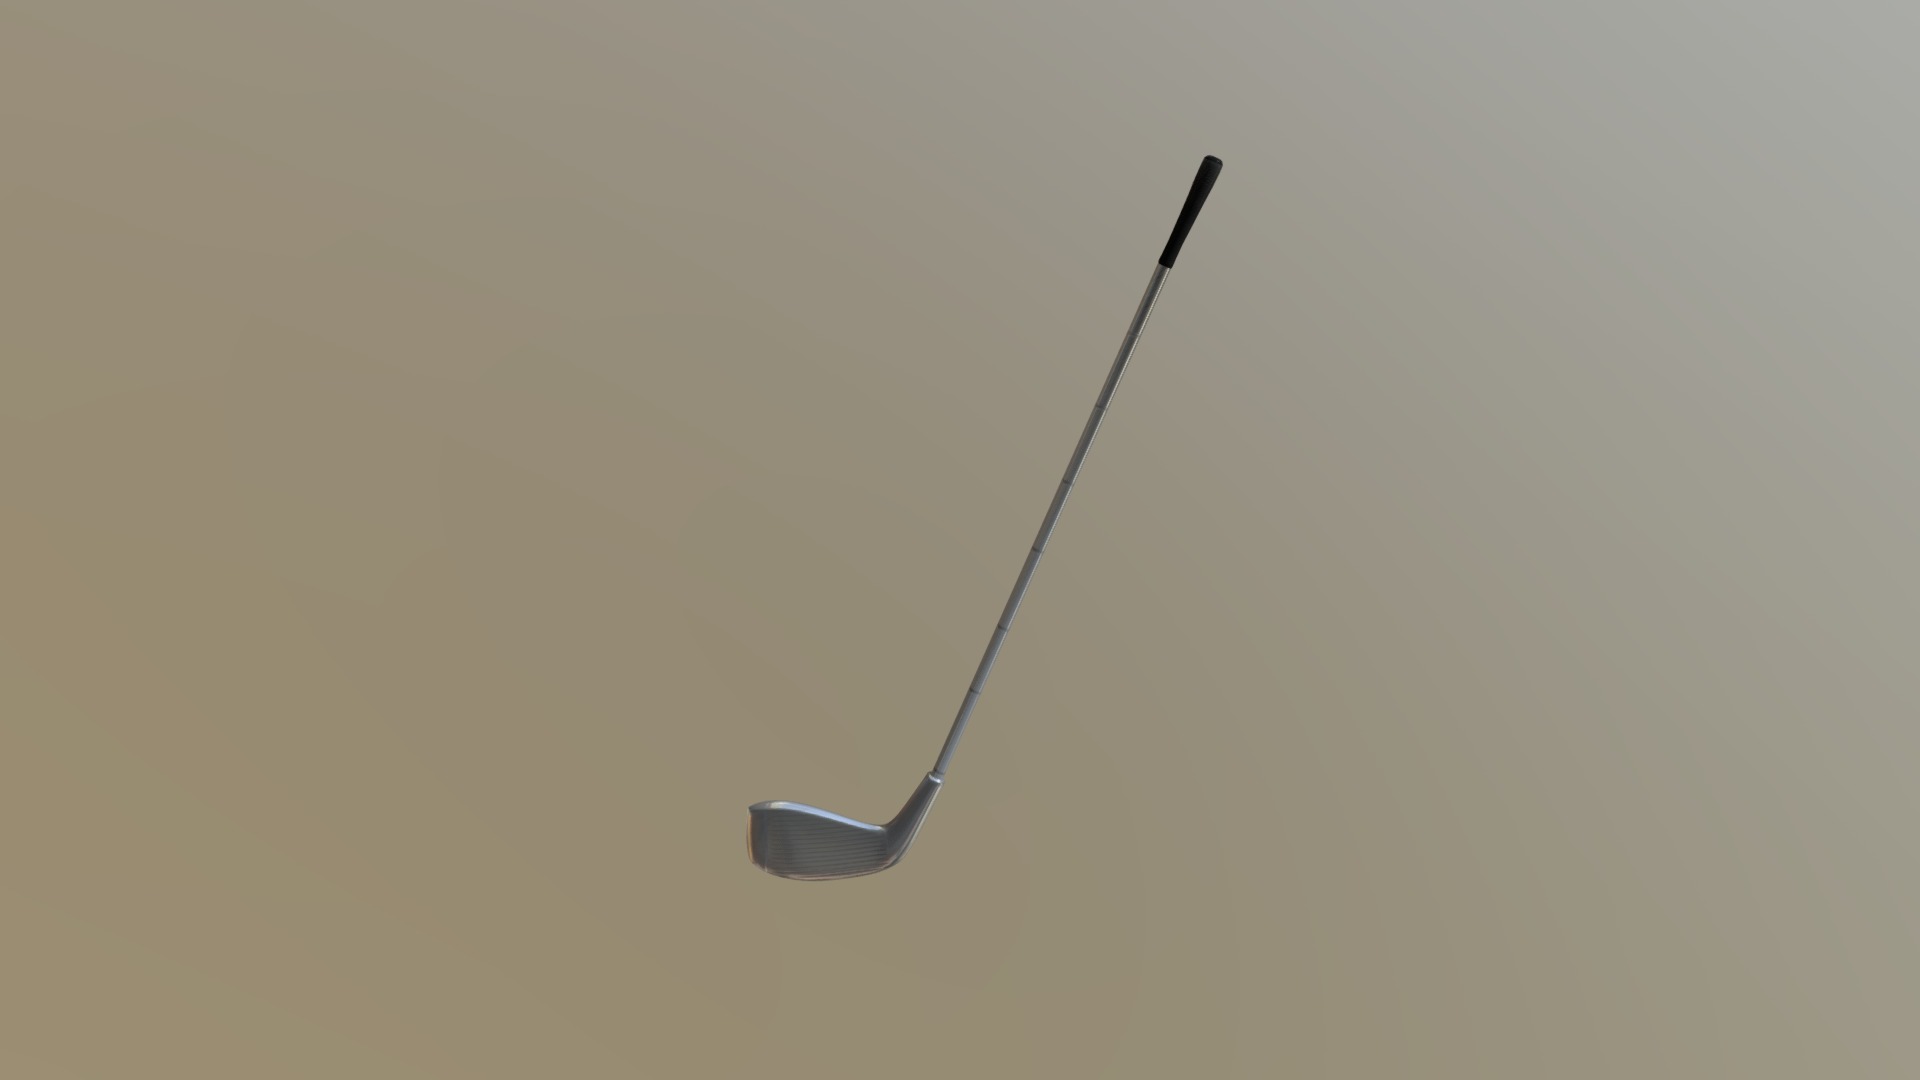 Here is my golf club in progress 3d model